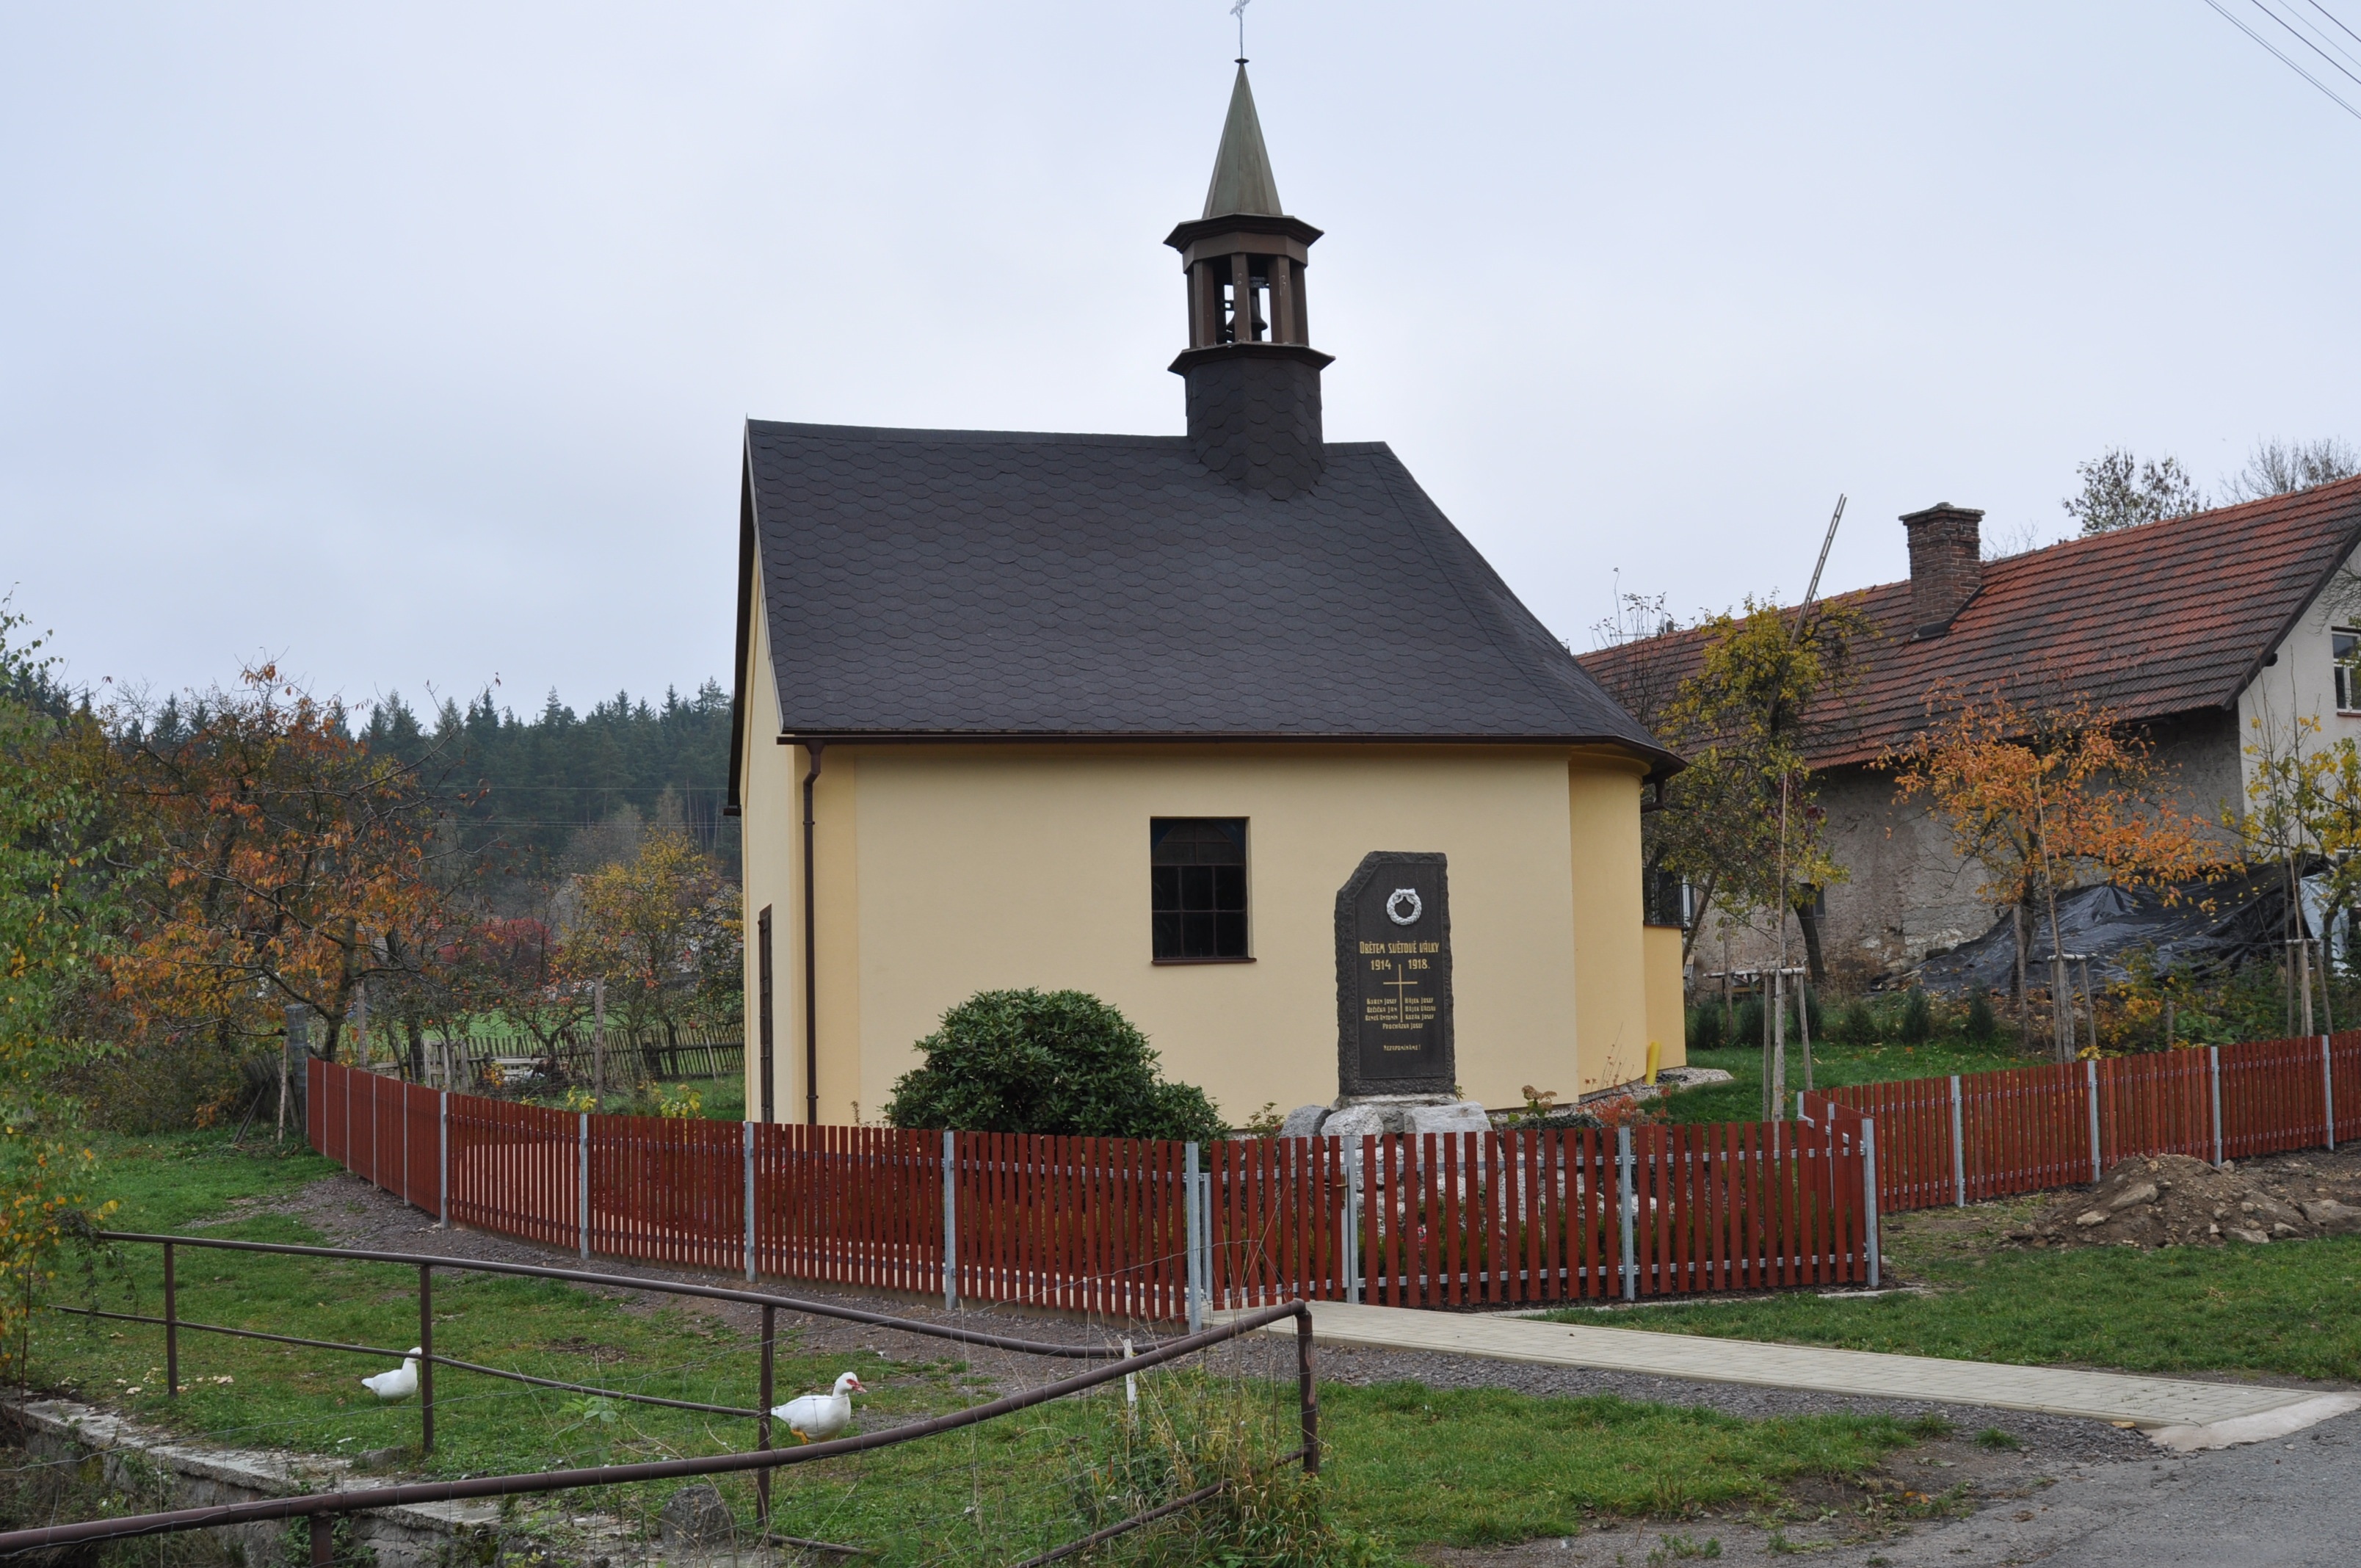 Péči o památky v Královéhradeckém kraji podporují místní akční skupiny